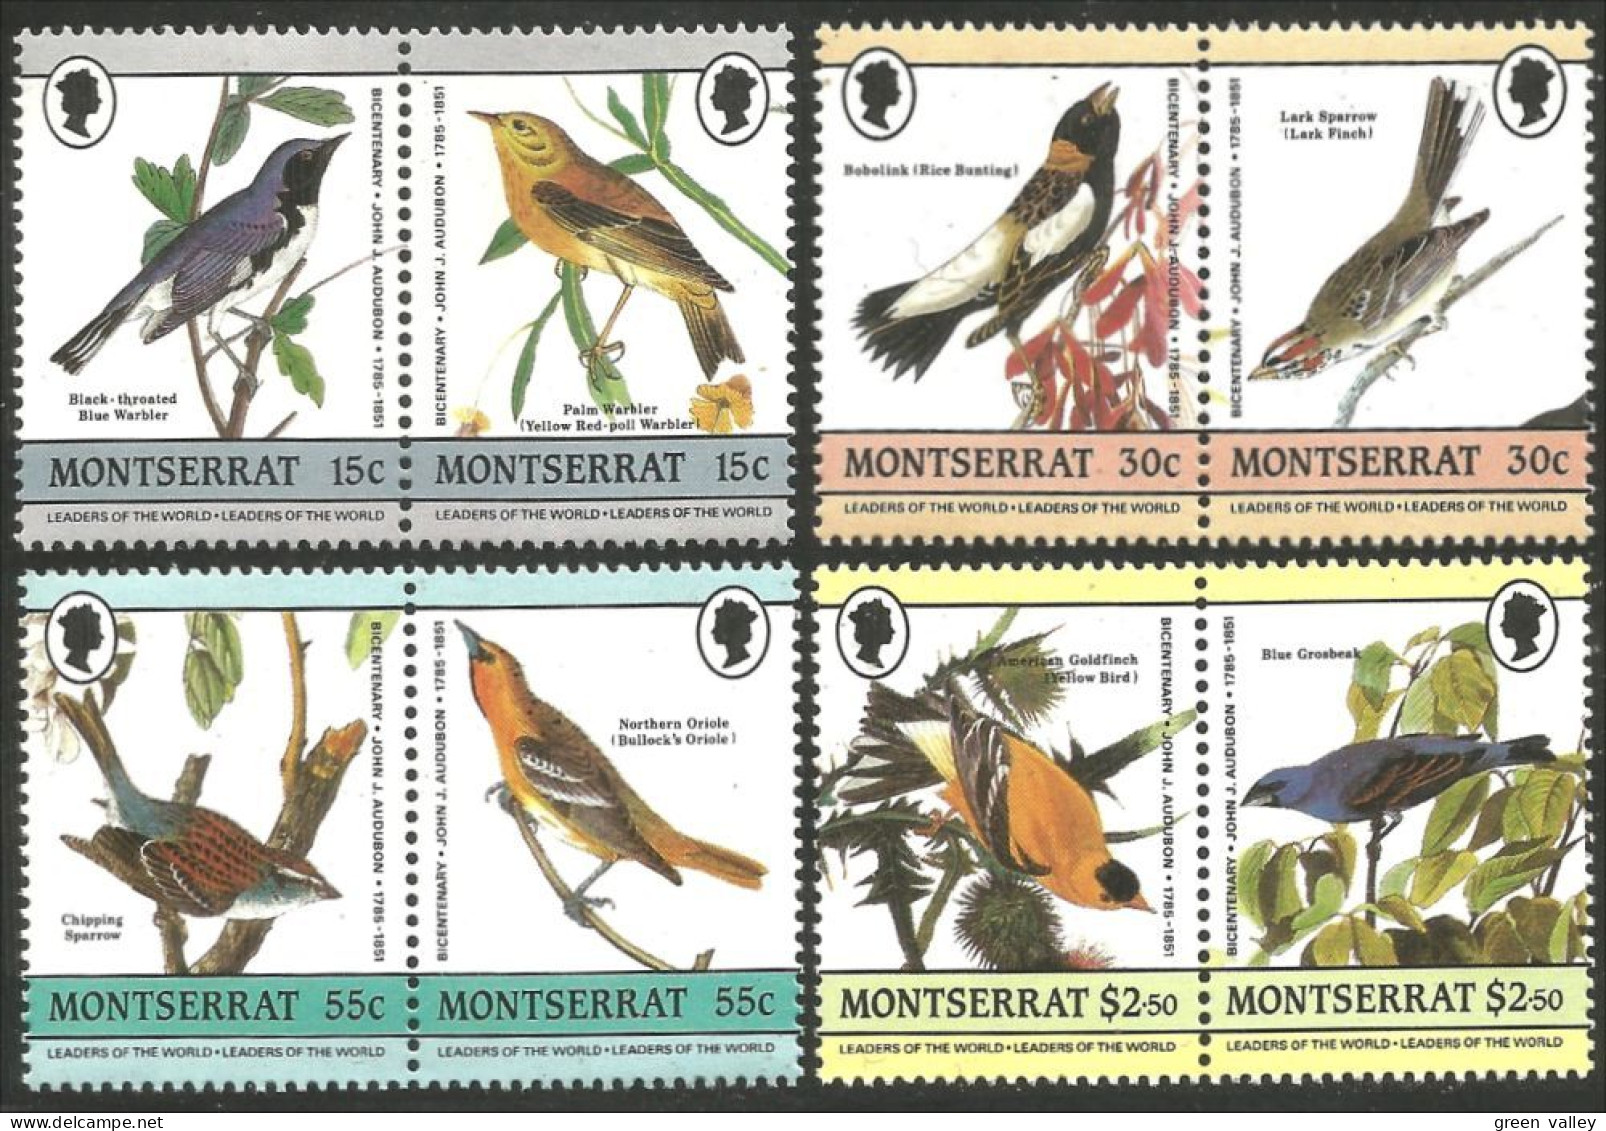 OI-184c Montserrat Oiseaux Birds Audubon Warbler Lark Alouette Rossignol Banting Oriole MNH ** Neuf SC - Sperlingsvögel & Singvögel